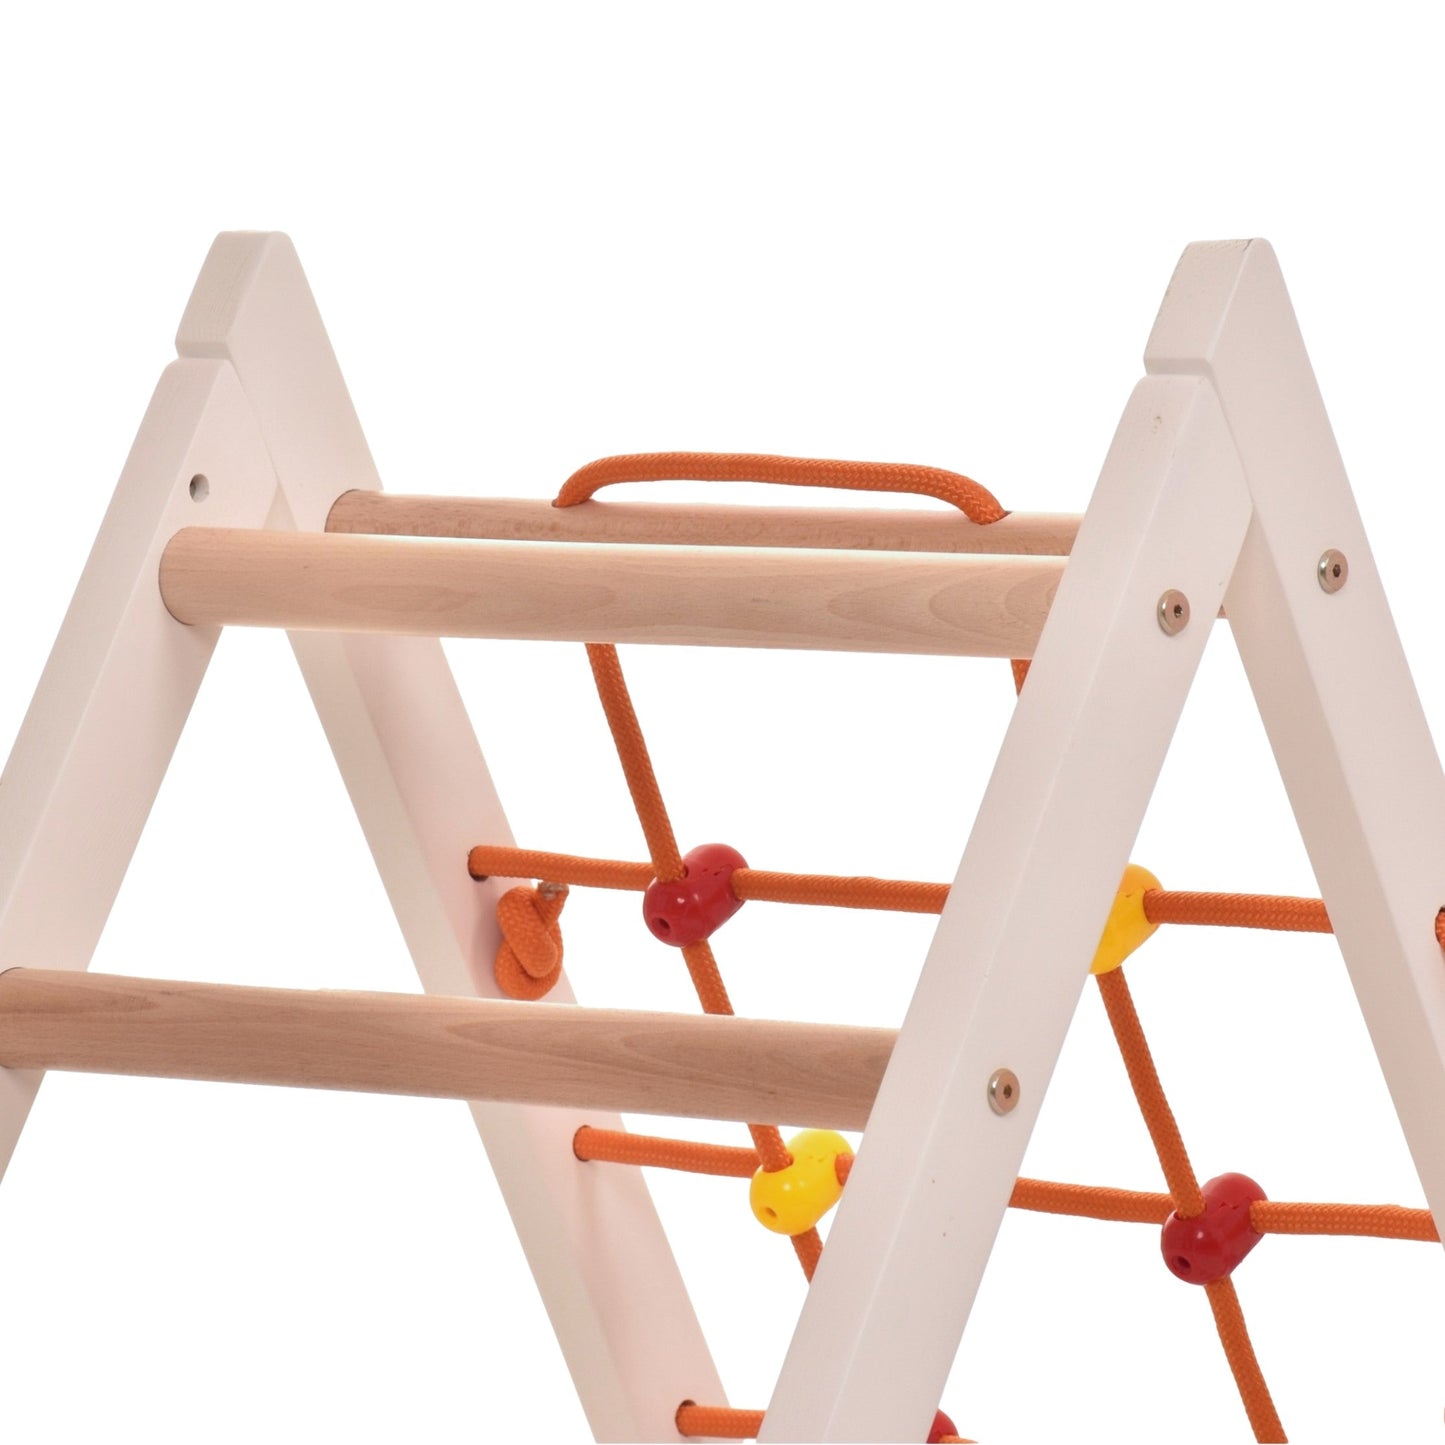 Kletterdreieck für Kinder -Klettergerüst aus Holz - Leiter, Spielnetz - IndoorSpielplatz, Spielturm - Hält bis zu 60kg Gewicht (weiße Farbe)